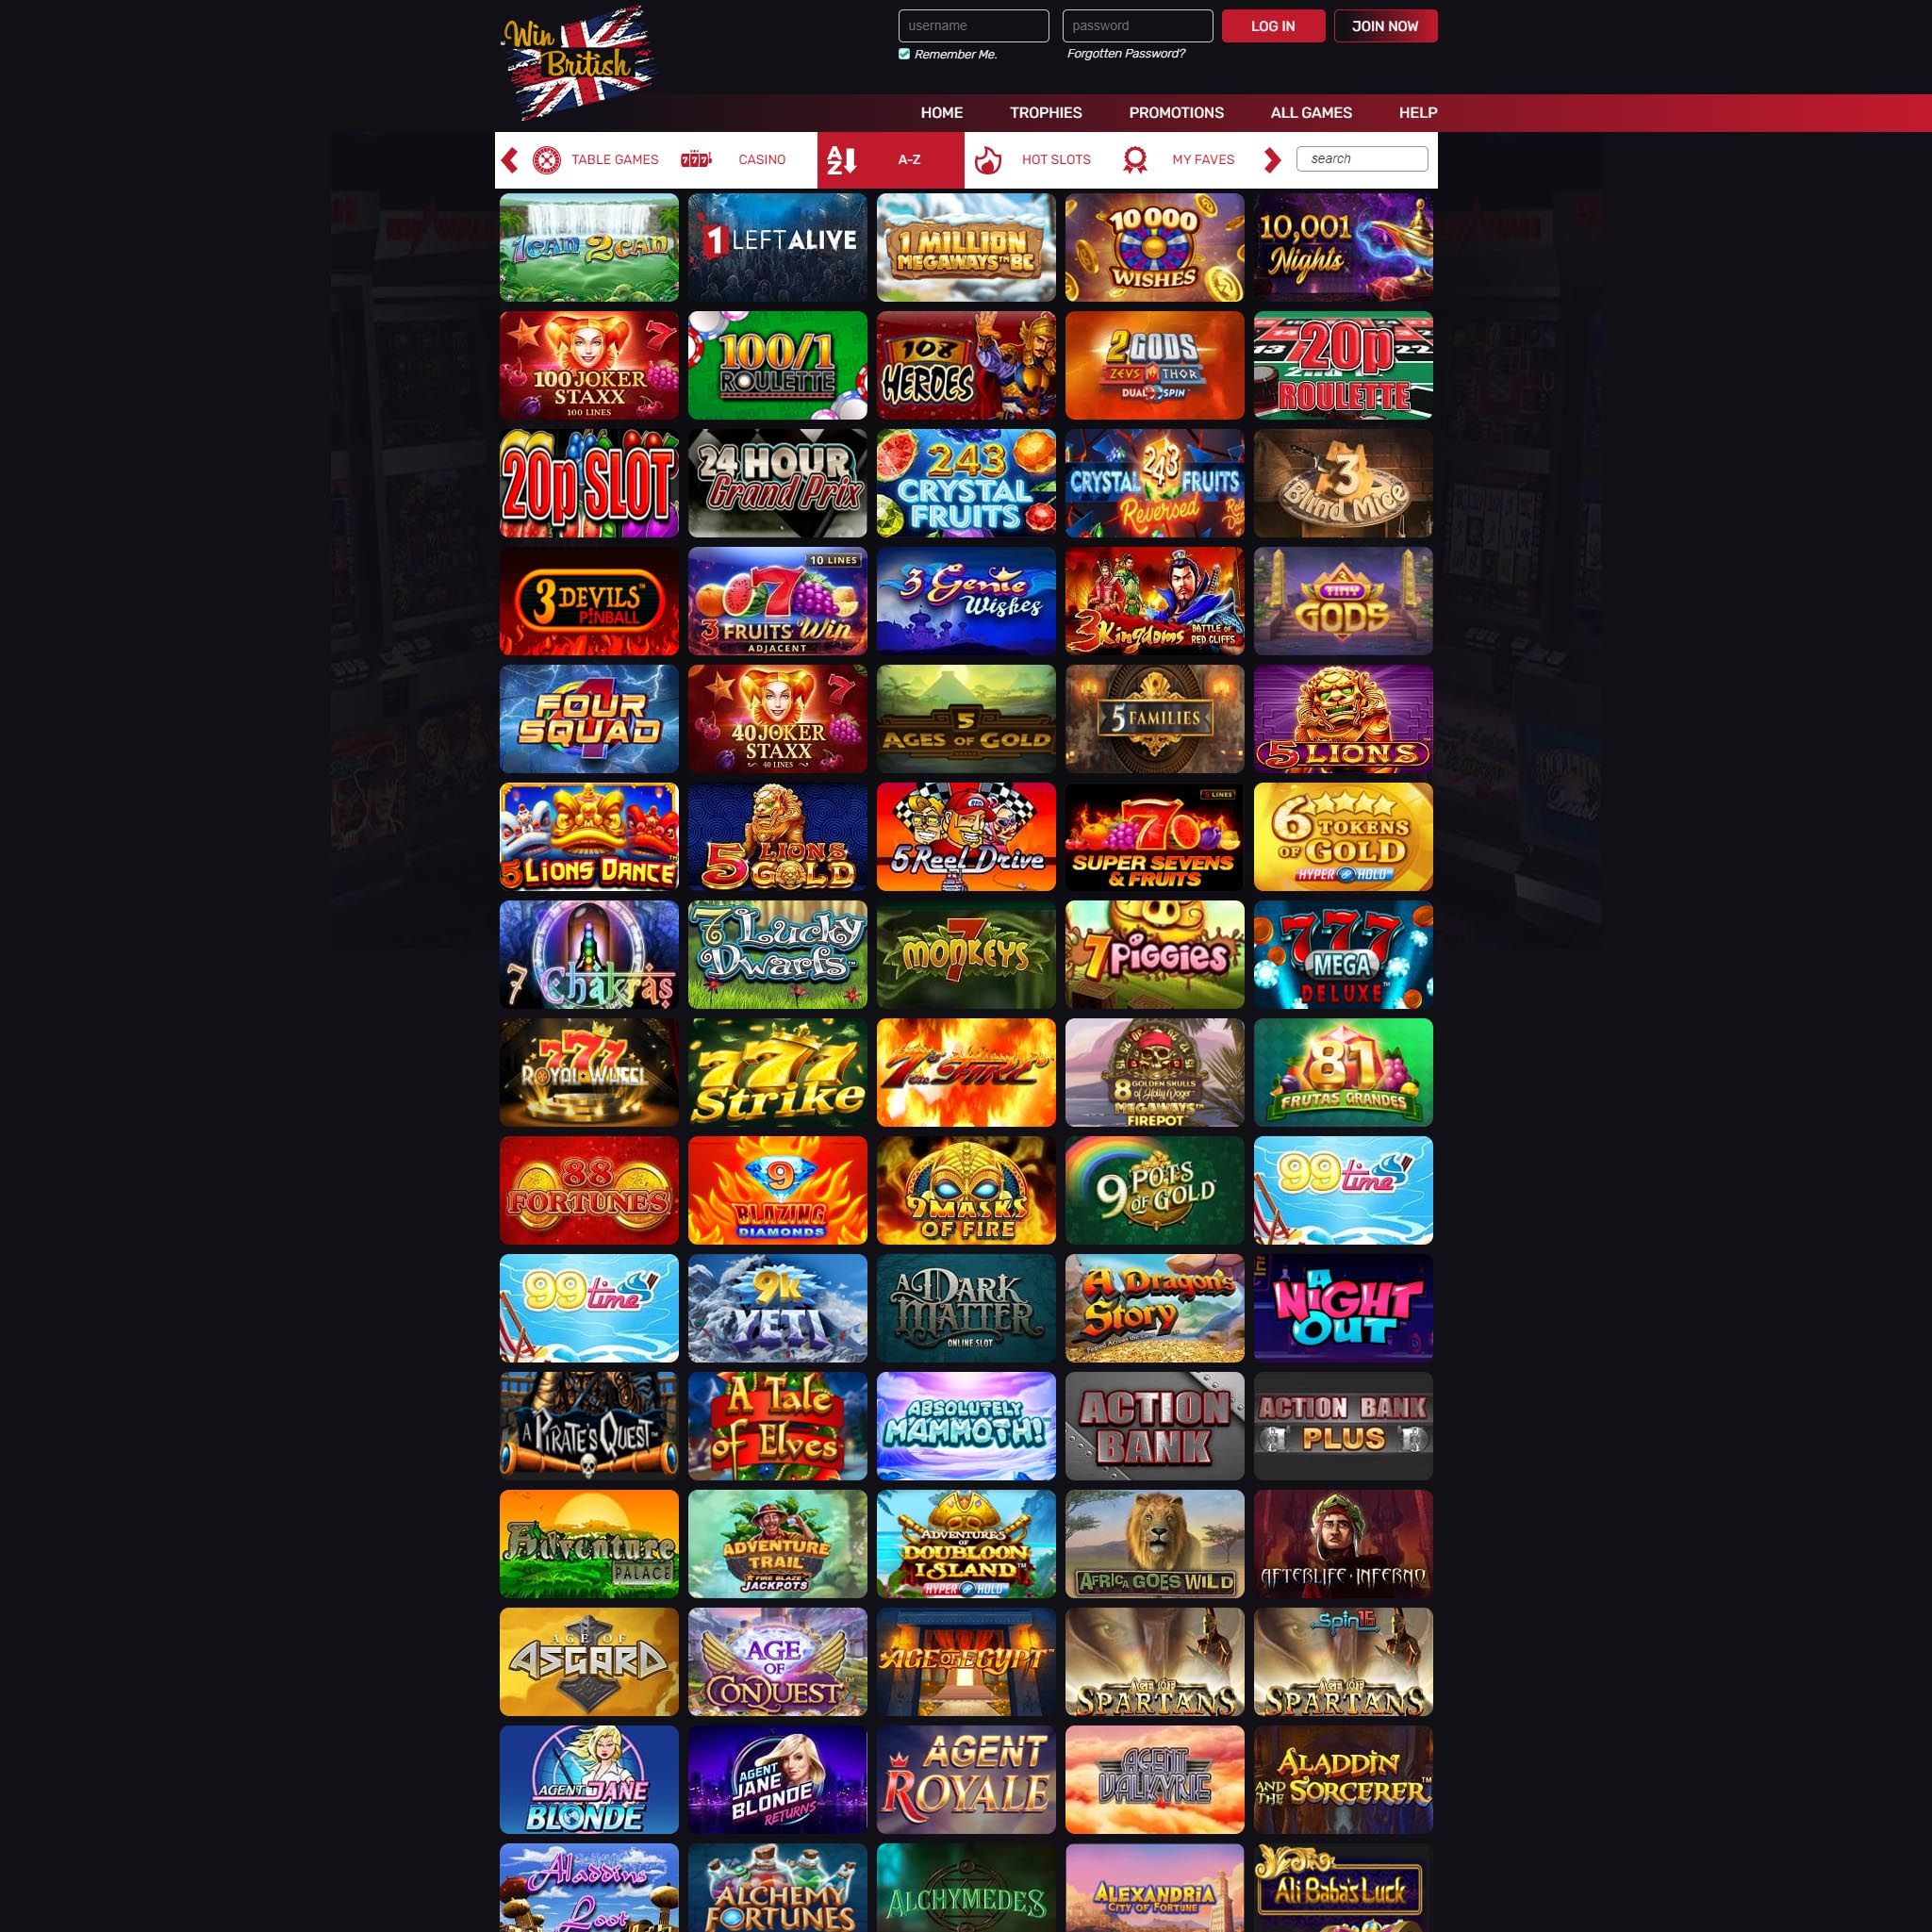 WinBritish Casino full games catalogue